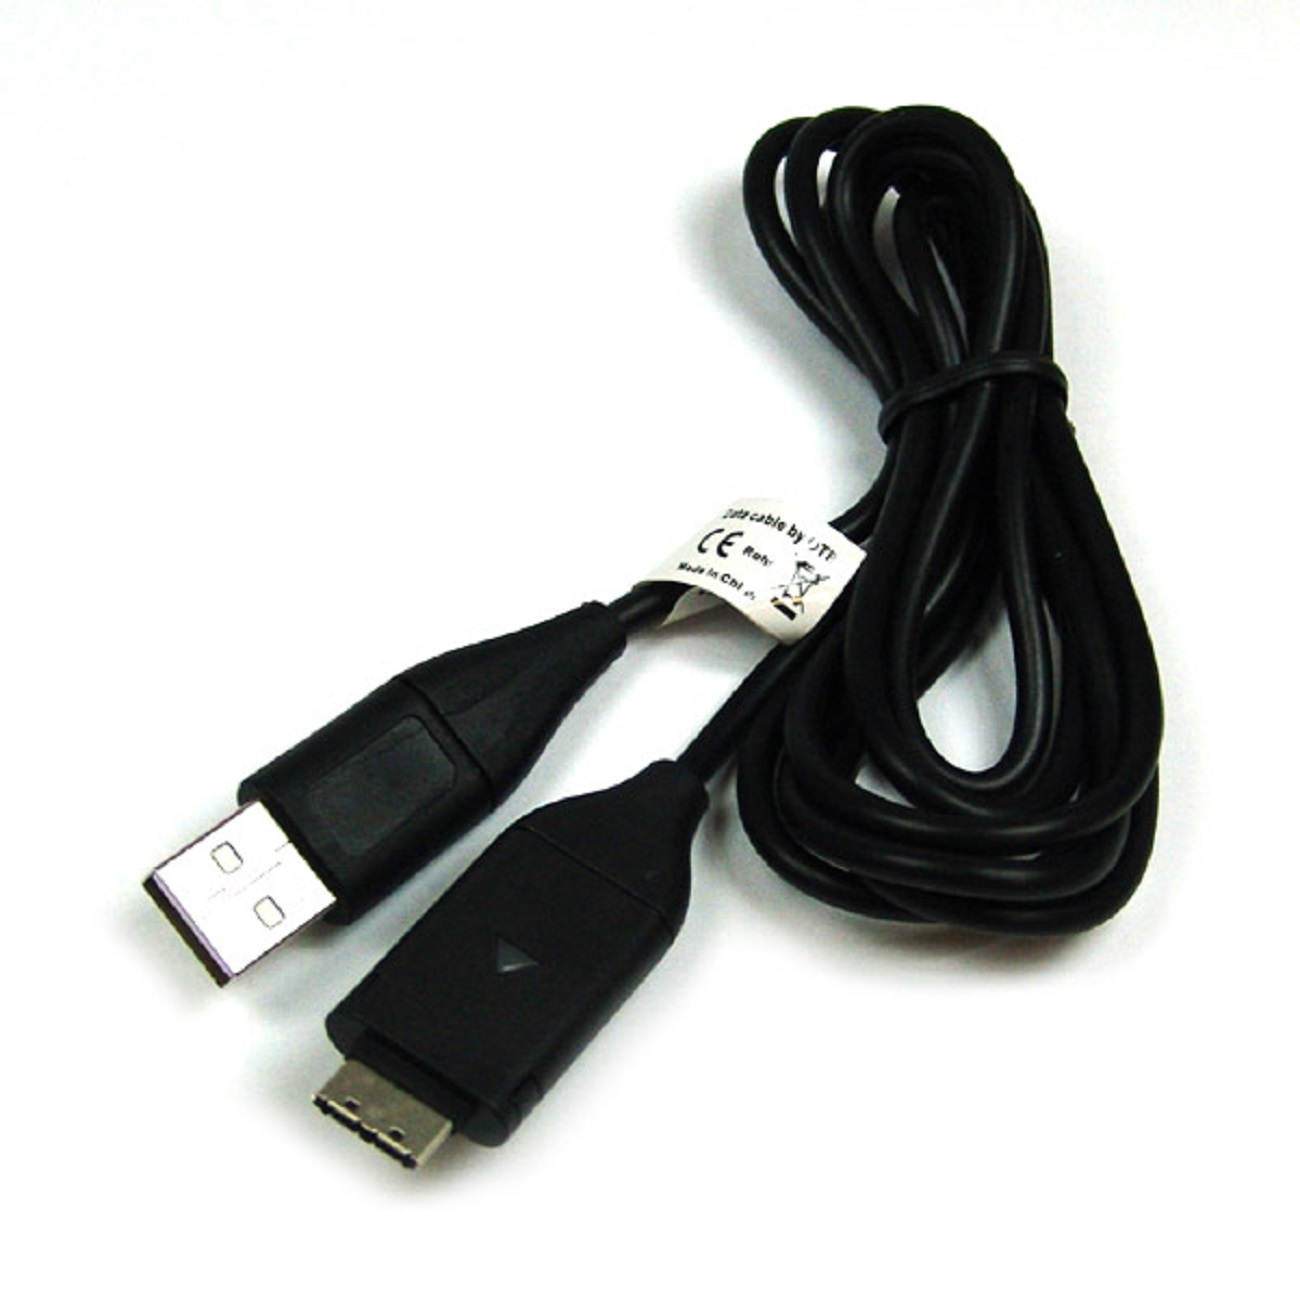 MOBILOTEC Samsung USB-Ladekabel mit Samsung, Zubehör schwarz kompatibel PL55